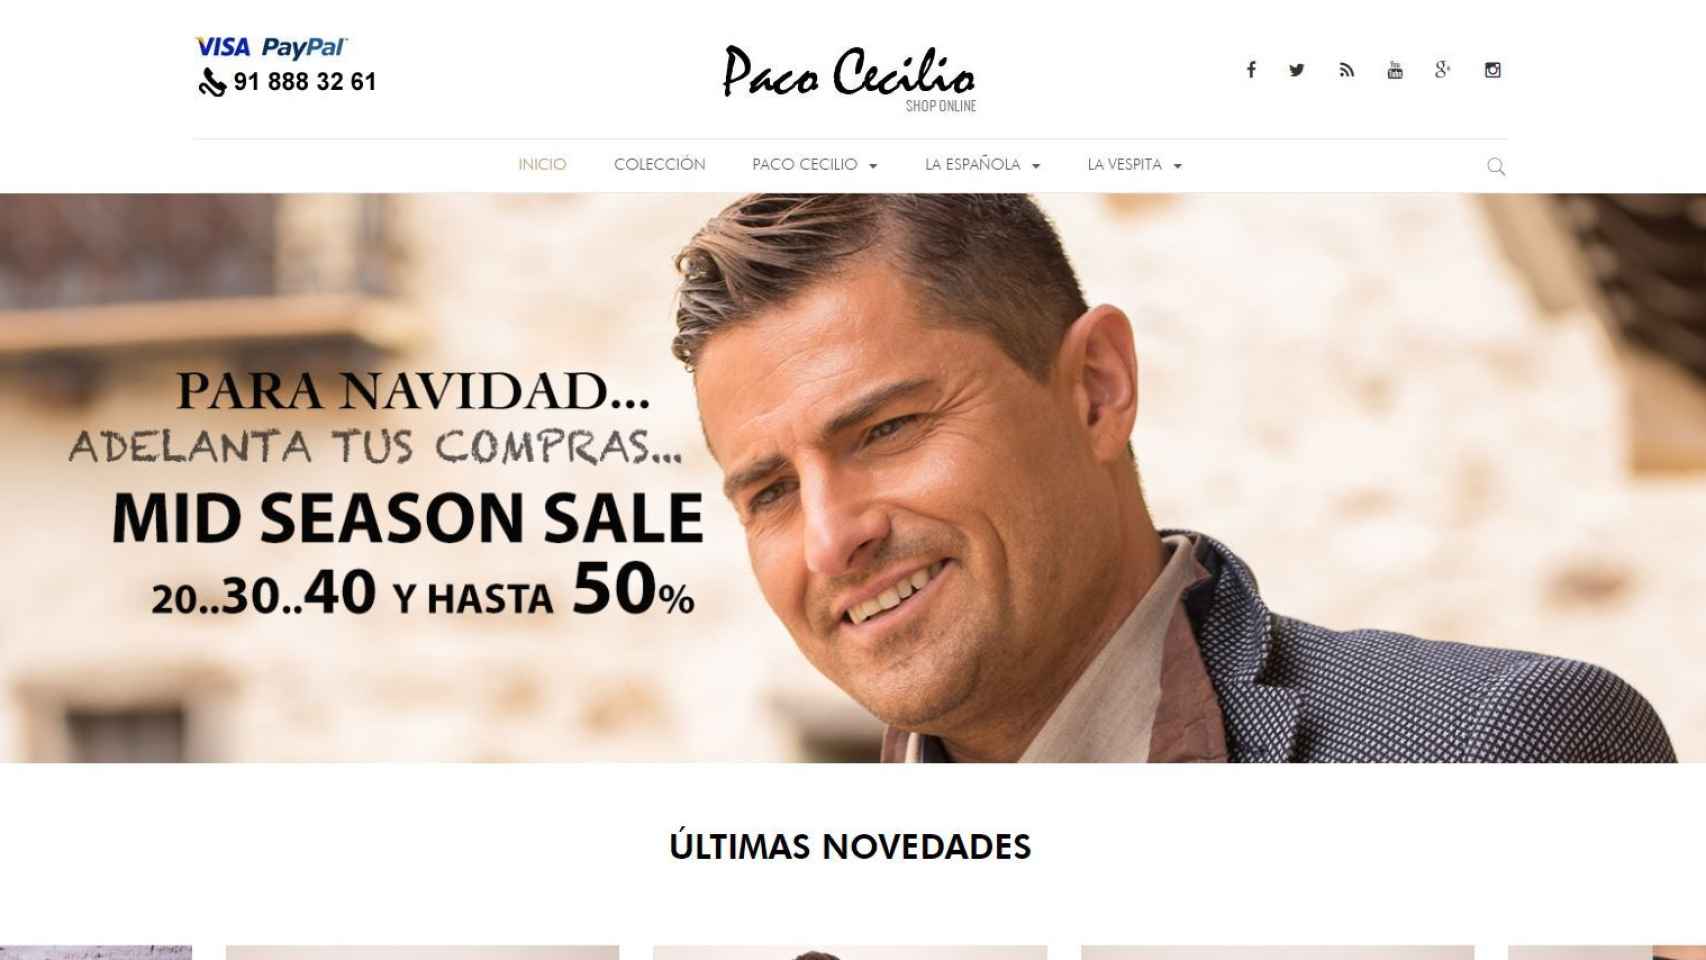 Captura de la web de Paco Cecilio con la imagen de Alfonso Merlos coronando la página.